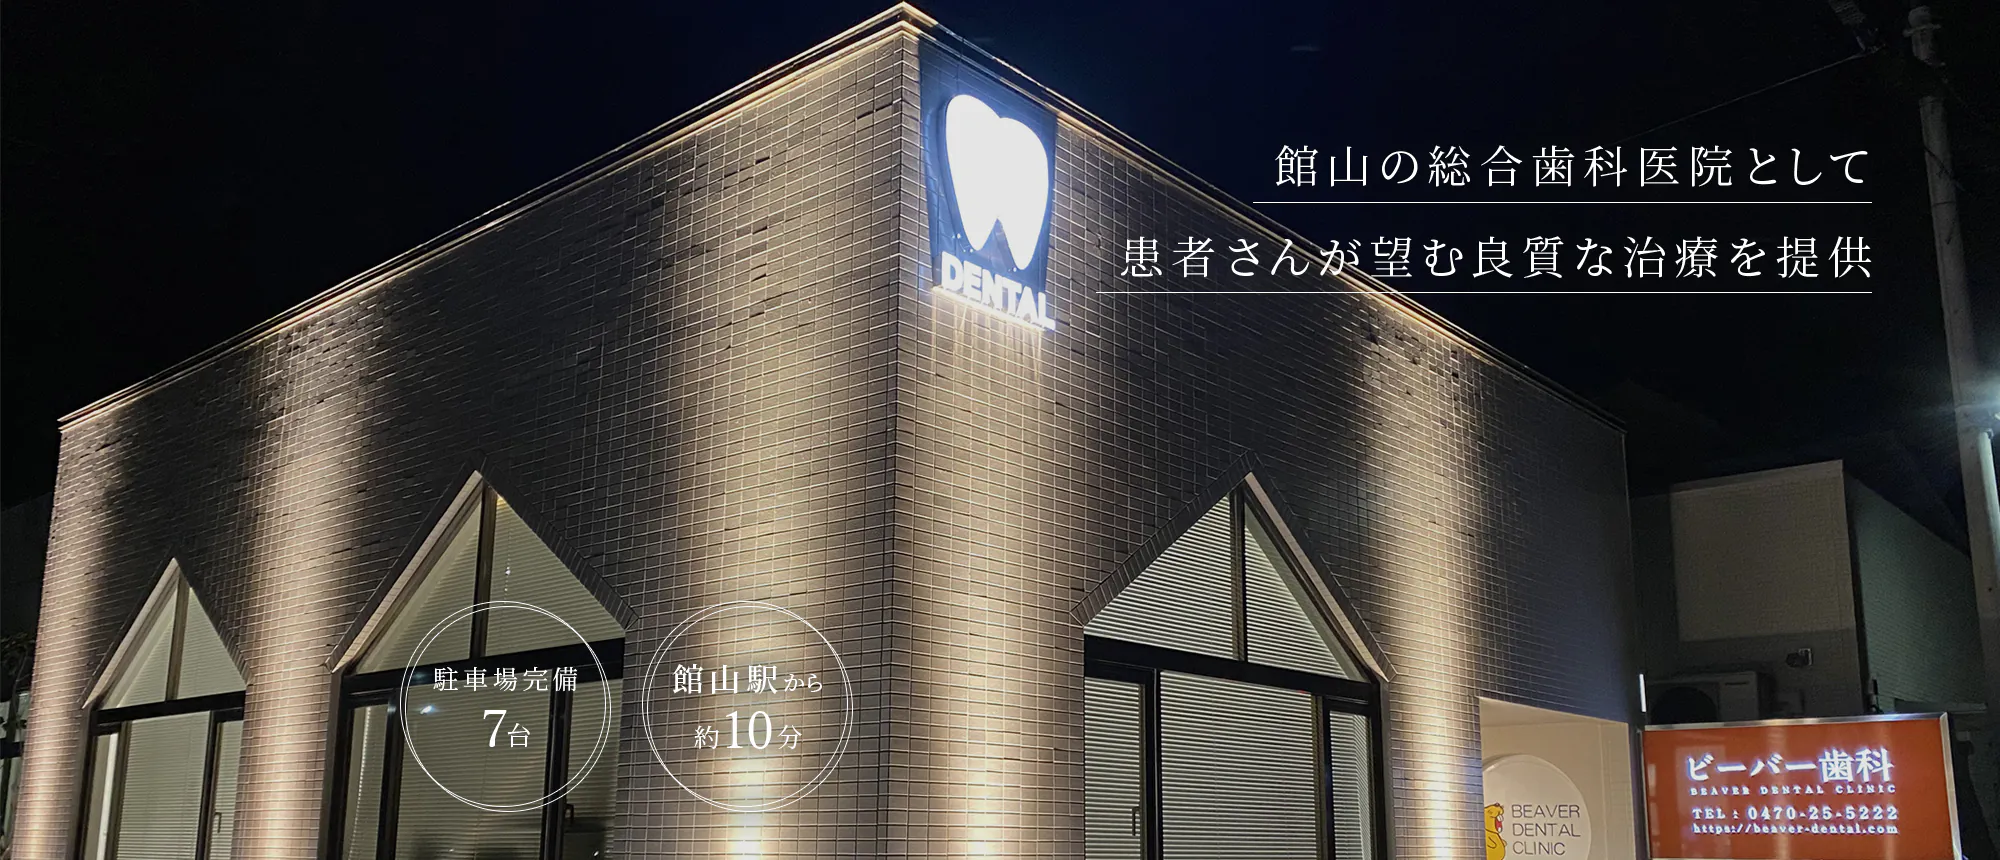 館山の総合歯科医院として 患者さんが望む良質な治療を提供